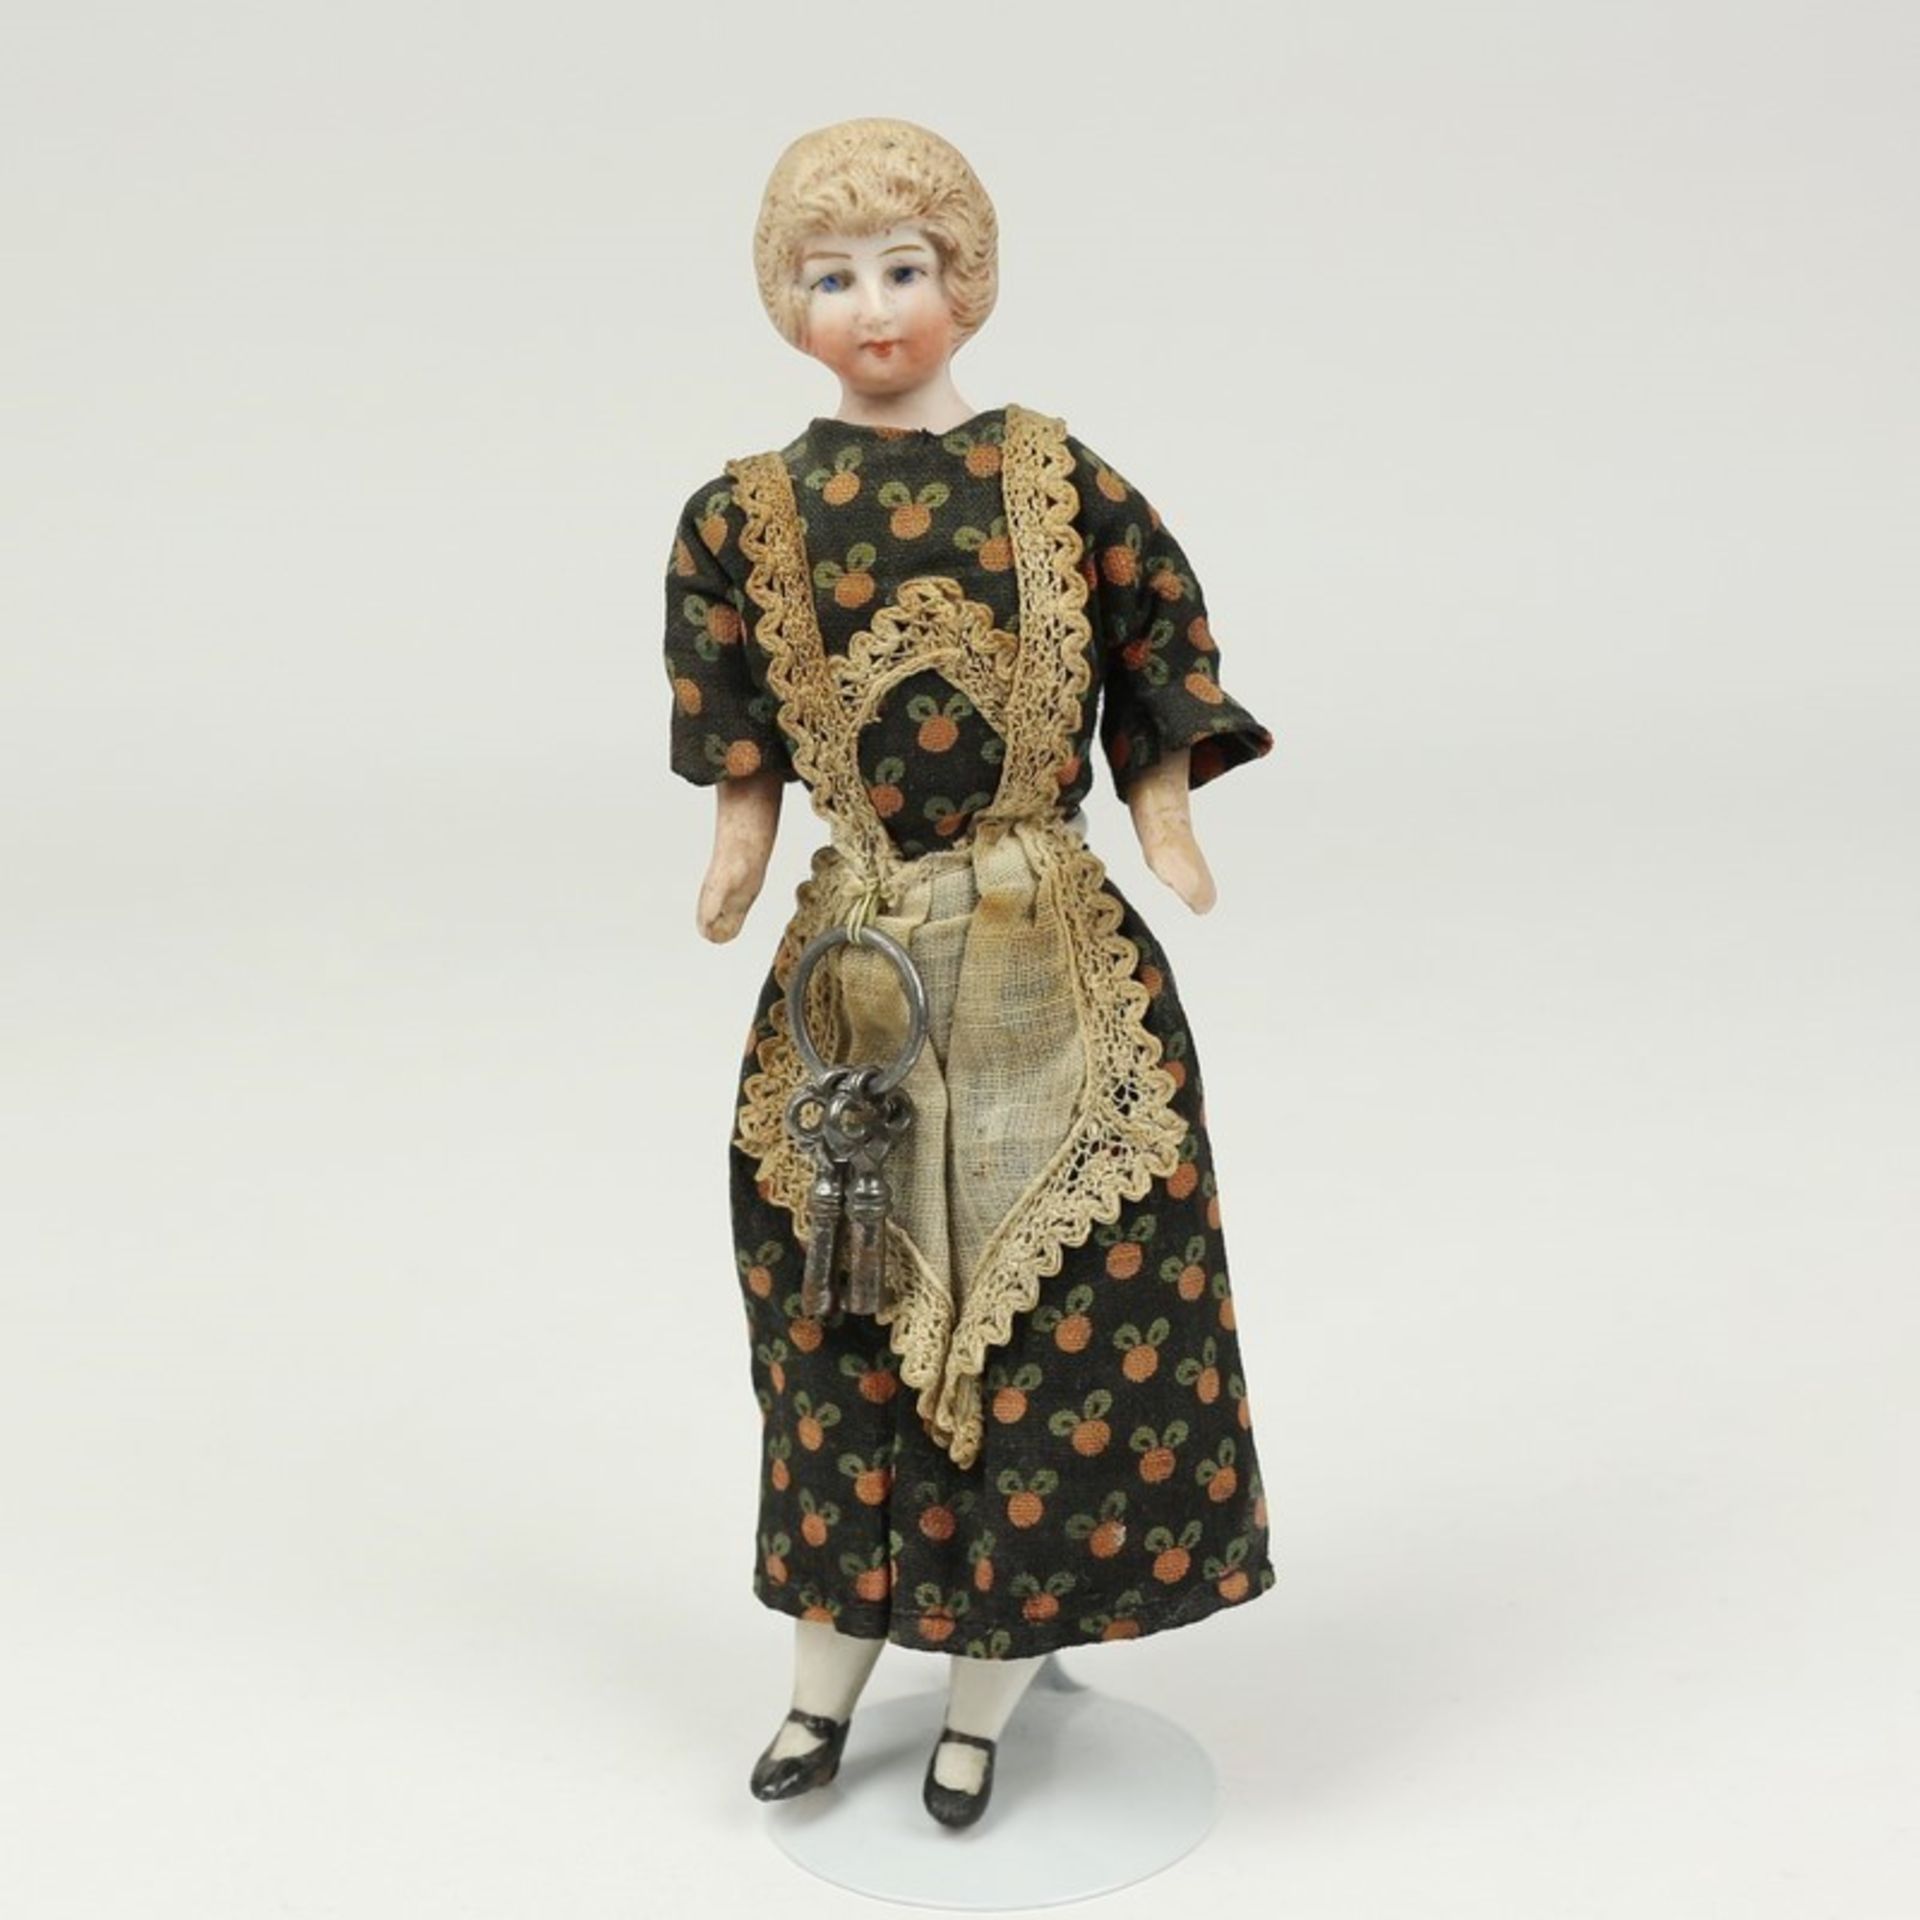 Puppe um 1910/20, Püppchen für die Puppenstube, dunkelblonde Dame des Hauses oder Mamsell im dunklen